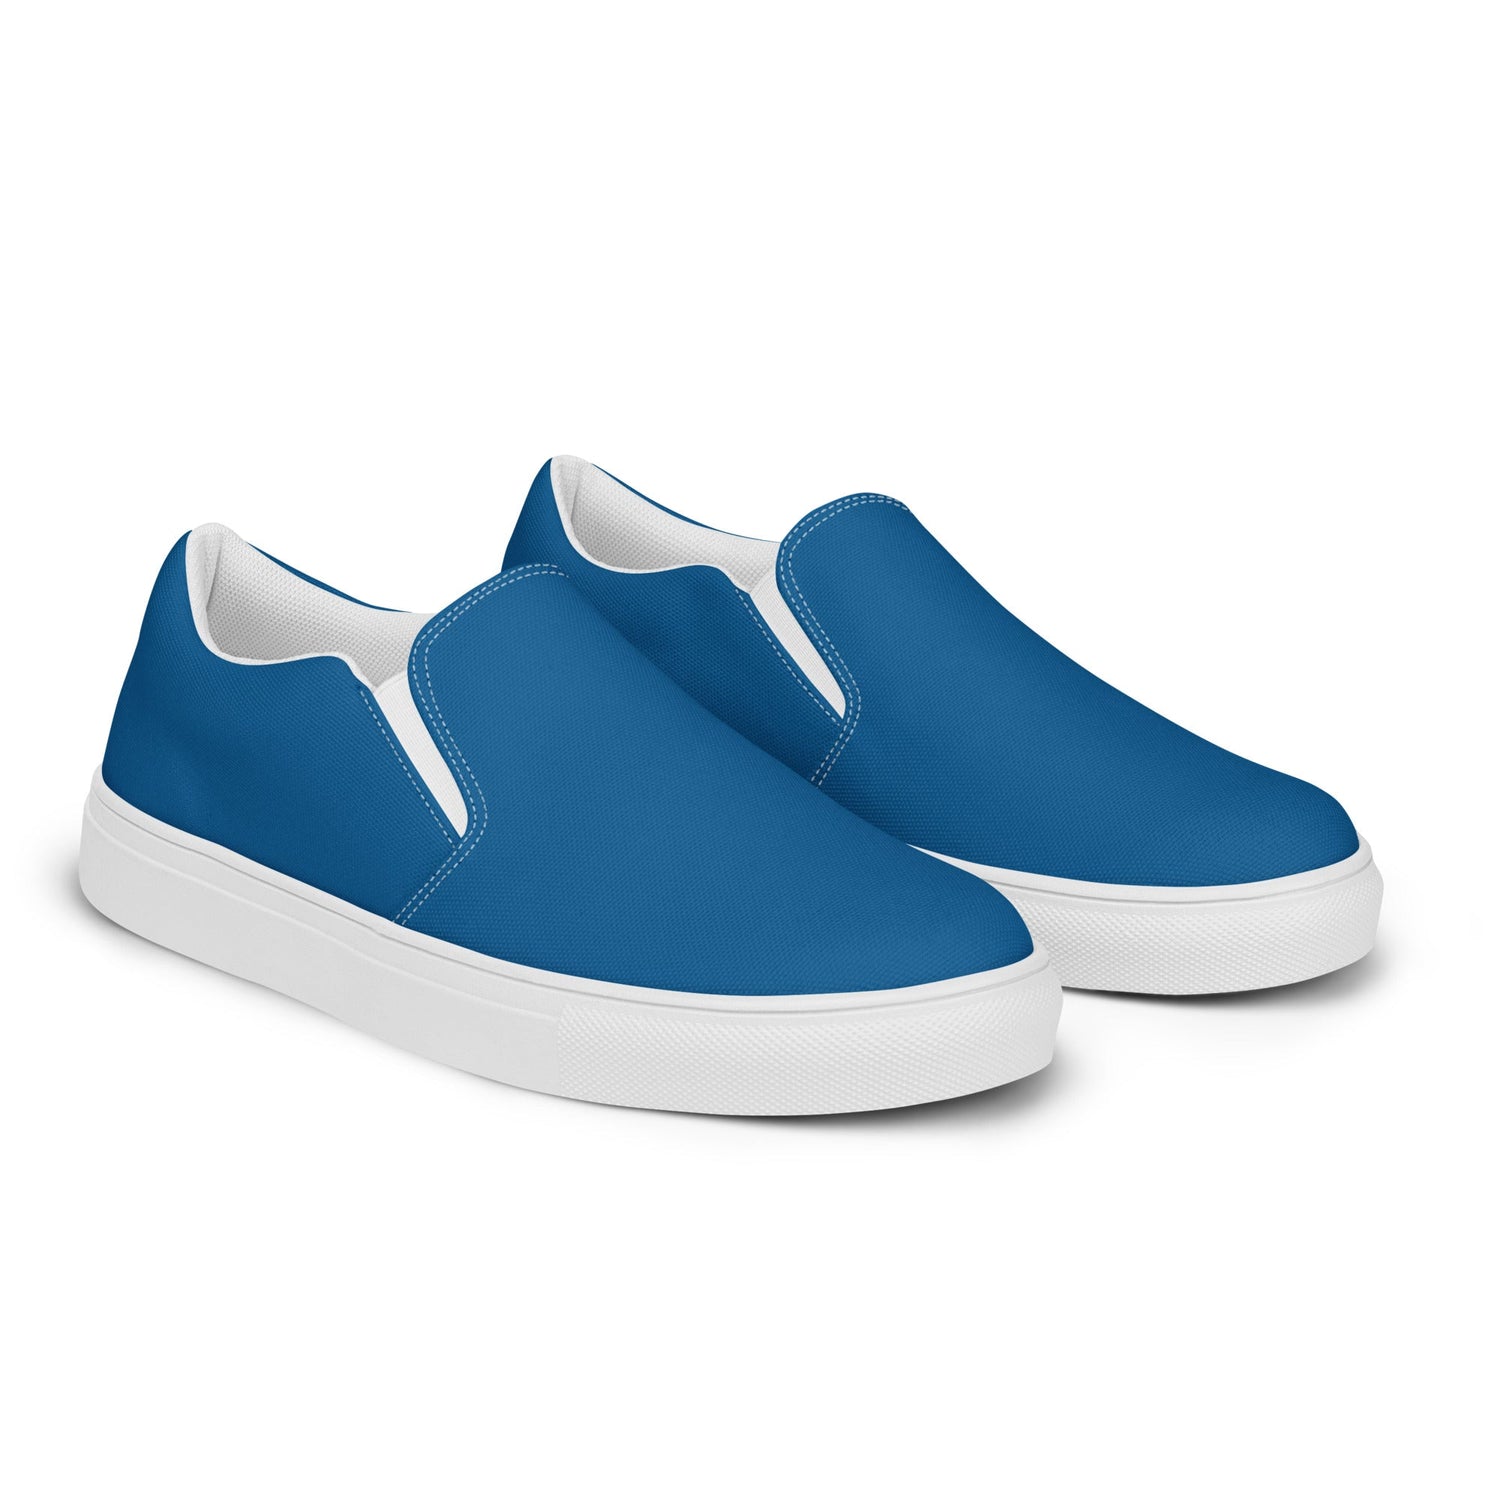 klasneakers Men’s slip-on canvas shoes - Rich Blue